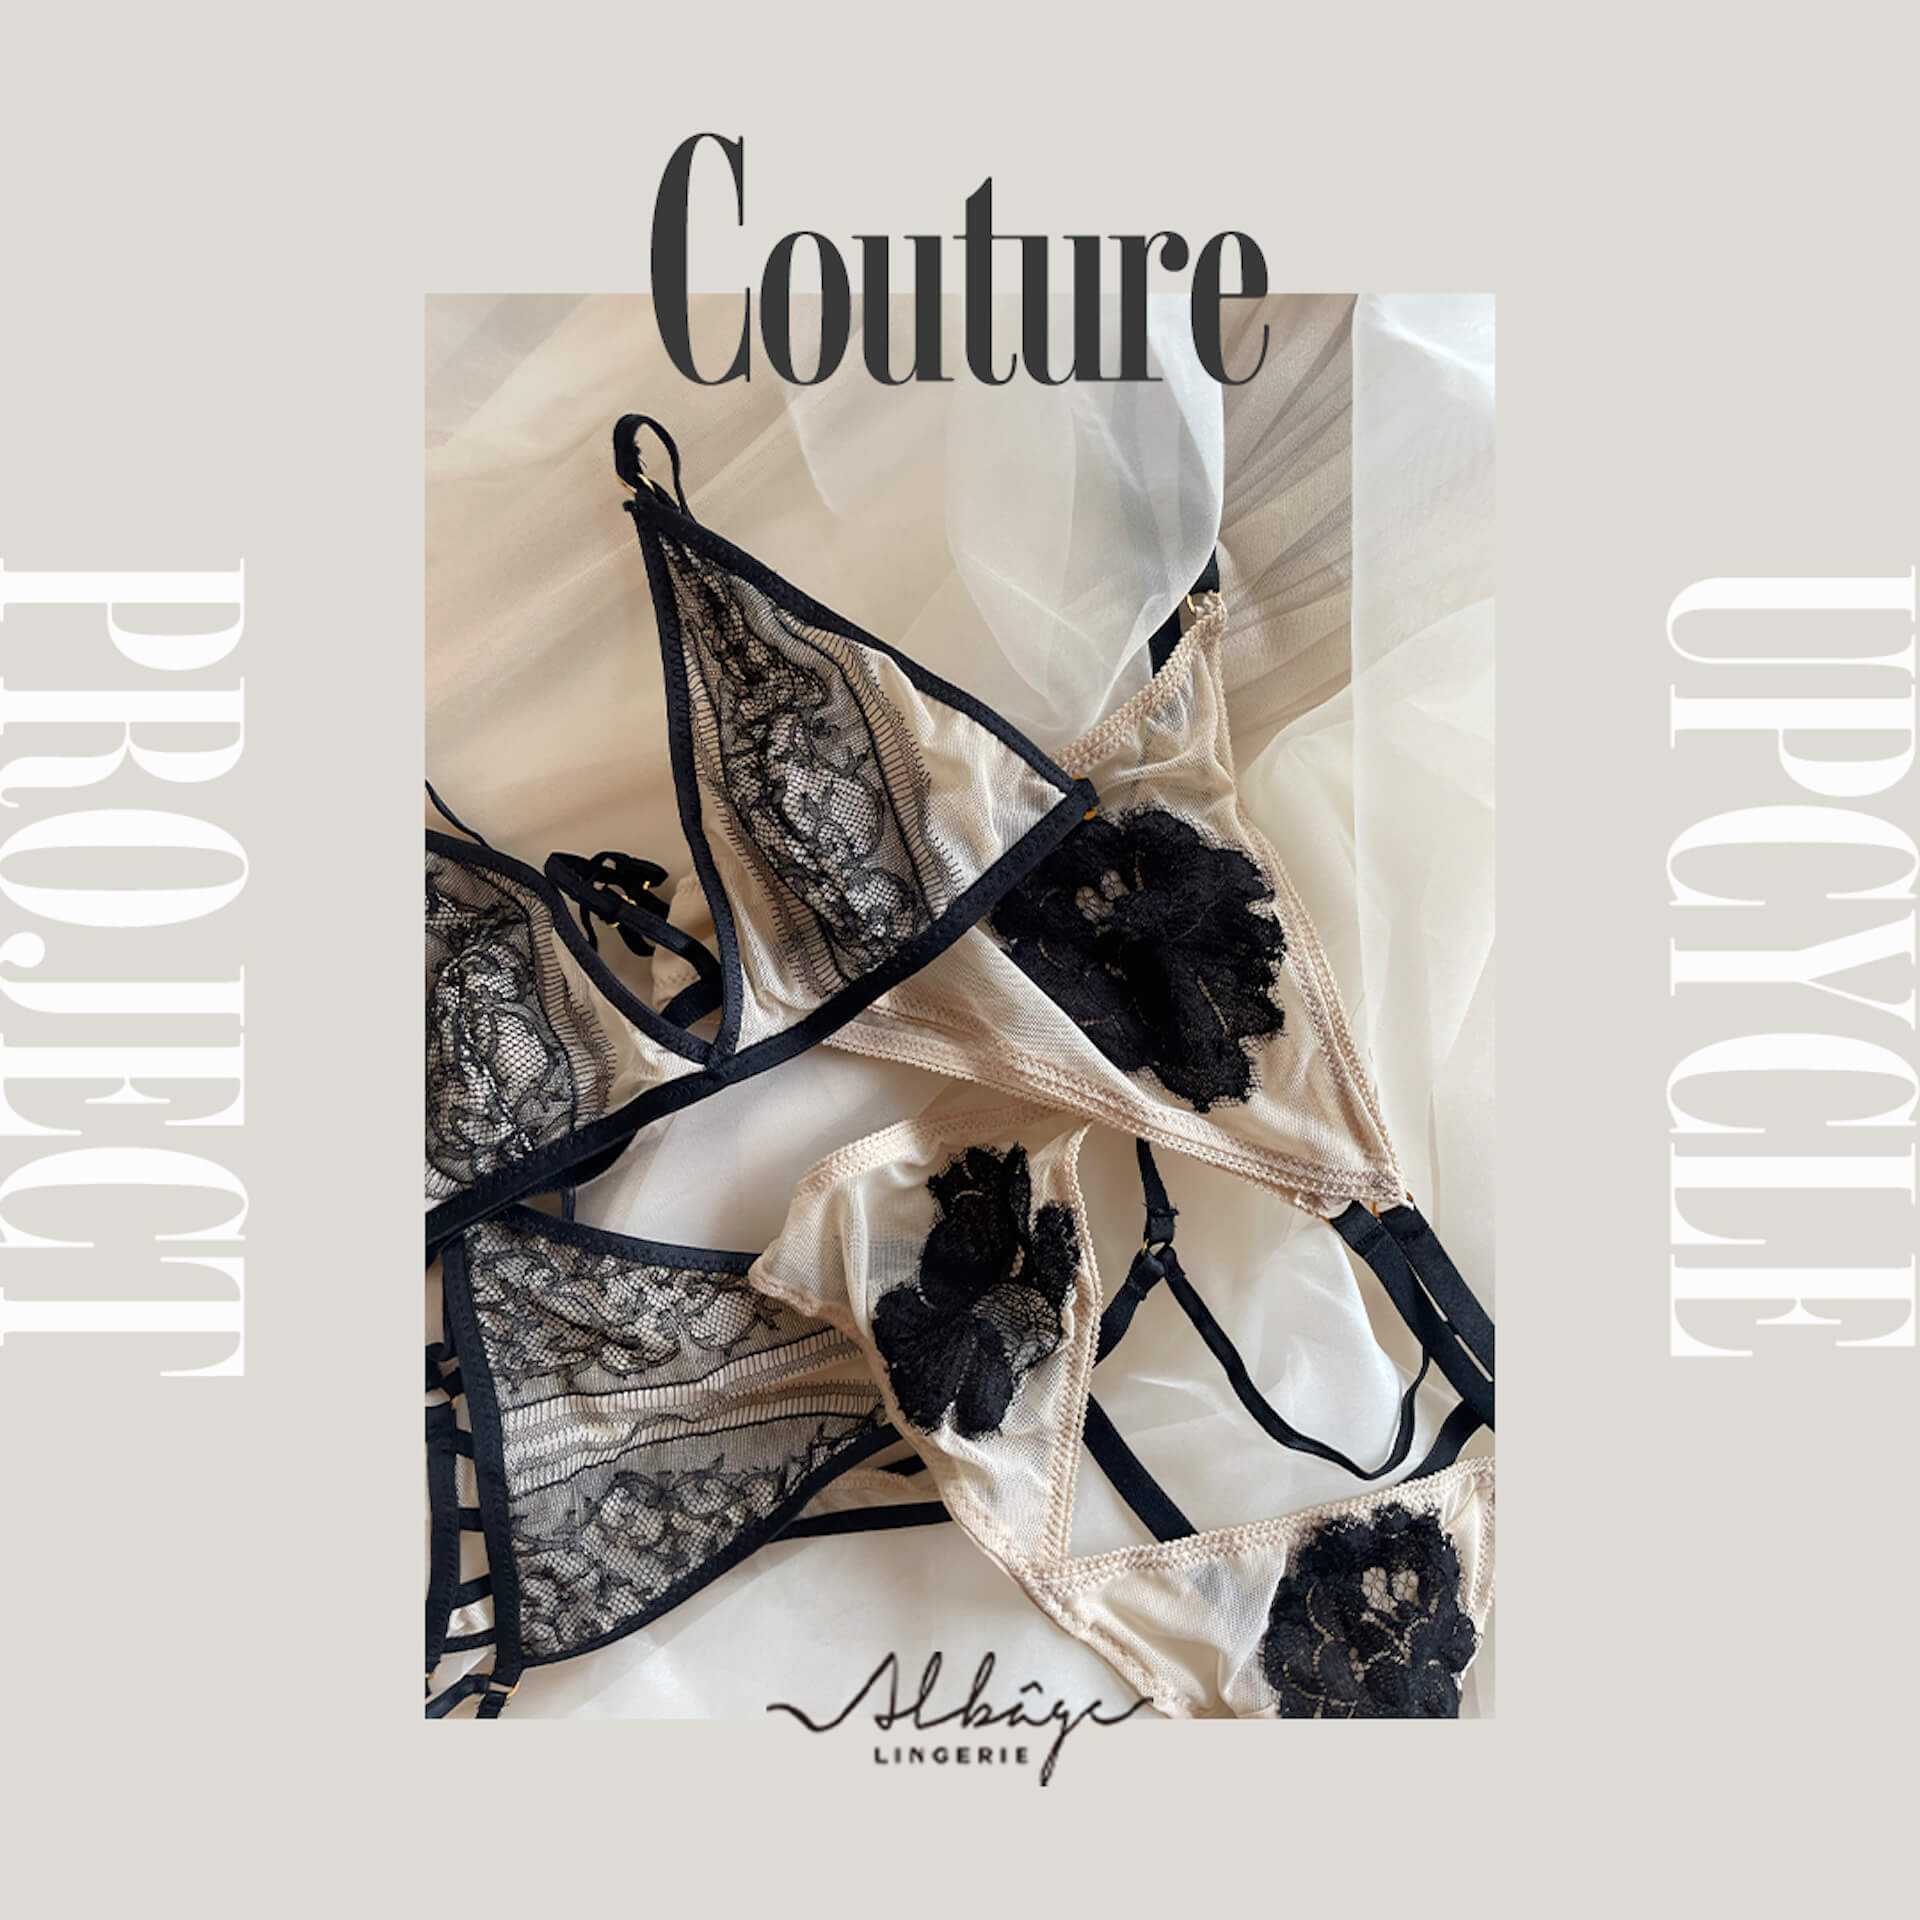 アルバージェ ランジェリー、期間限定ポップアップを名古屋で開催｜新作「タンクトップブラ」も fashion220809_albage_lingerie-011